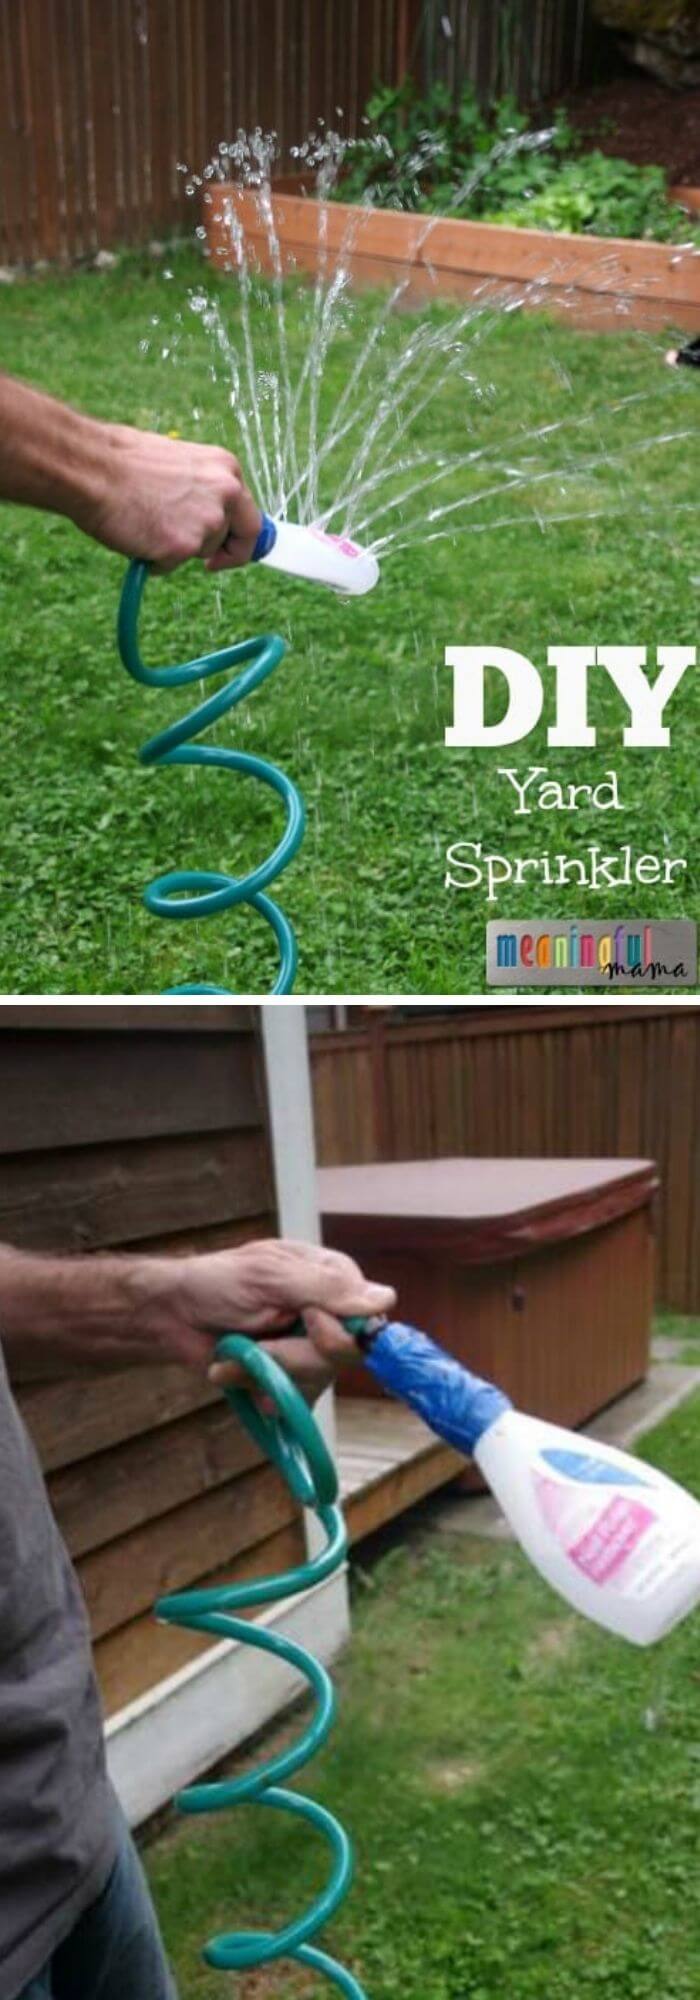 DIY Yard Sprinkler